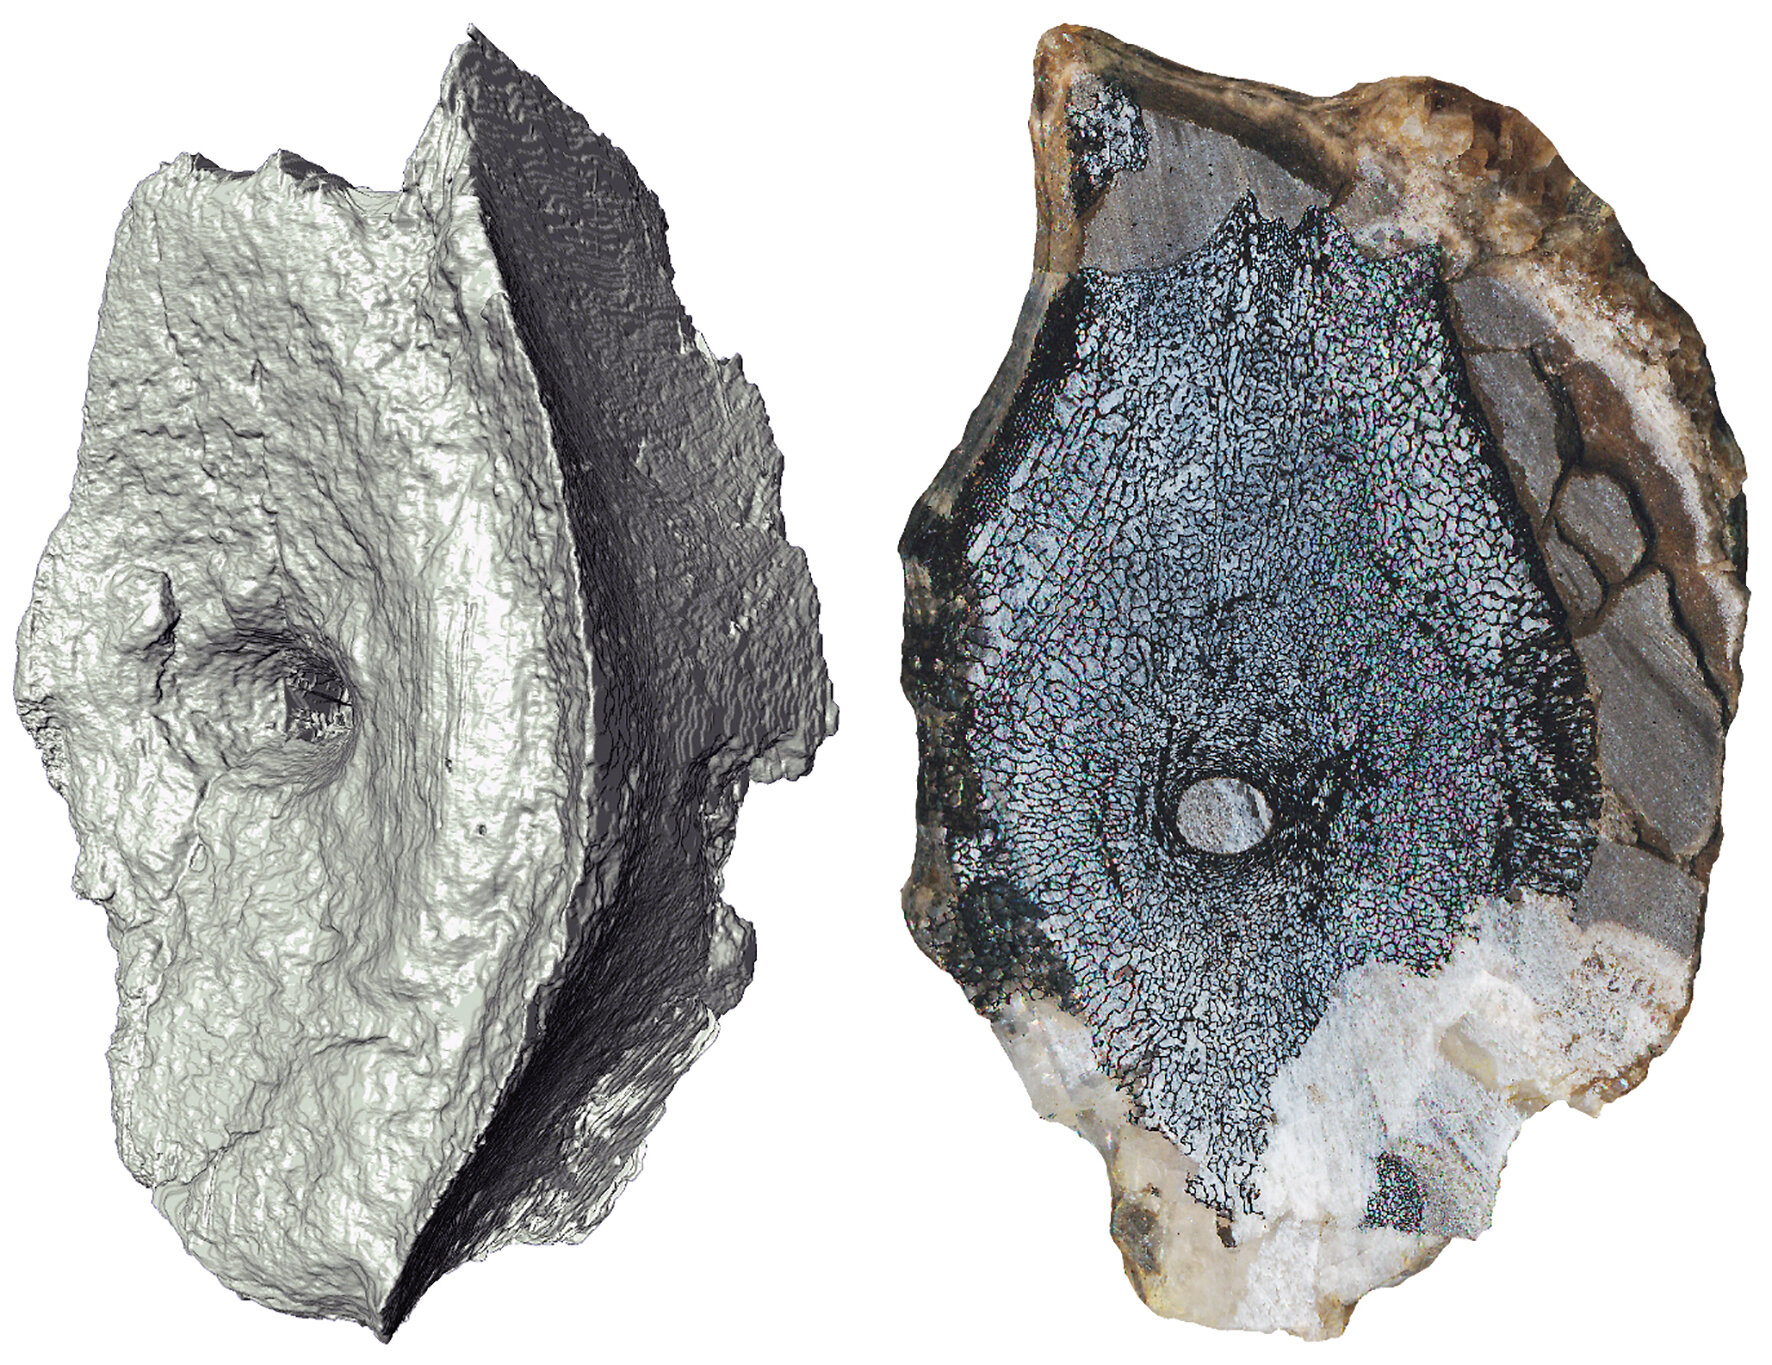 Imagen de tomografía computarizada y sección transversal que muestra la estructura ósea interna de las vértebras del ictiosaurio más antiguo. Crédito: Øyvind Hammer y Jørn Hurum